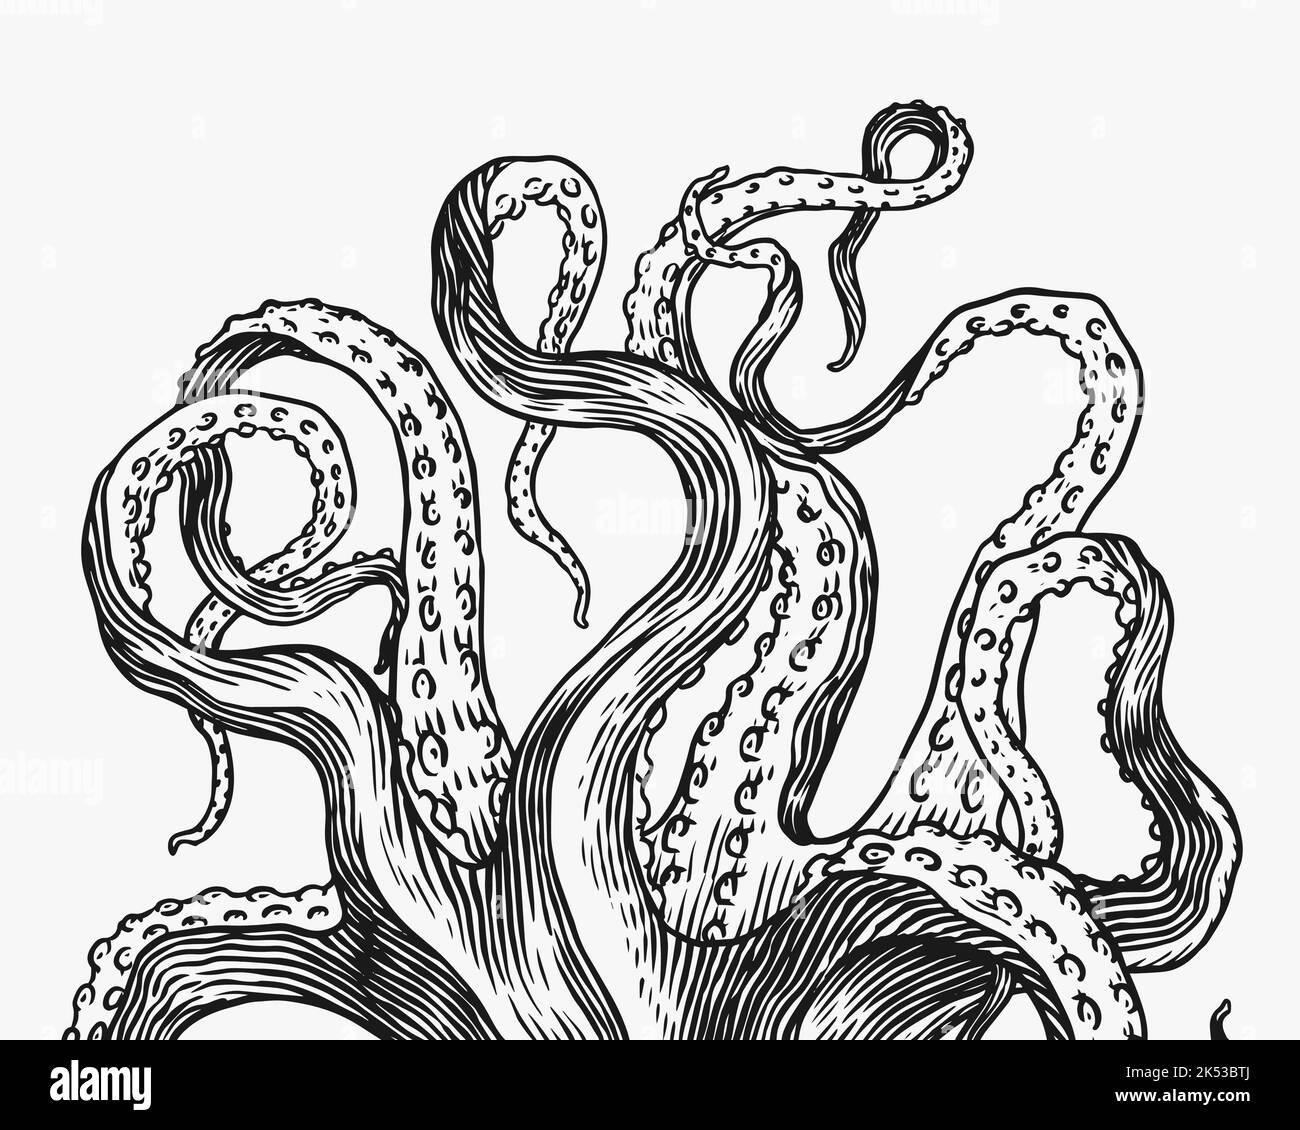 Kraken-Tentakeln. Eingraviert von Hand gezeichnet in alter Skizze, Vintage Kreatur. Nautisch oder marine, Monster. Tier im Ozean. Vorlage für Logos, Etiketten Stock Vektor